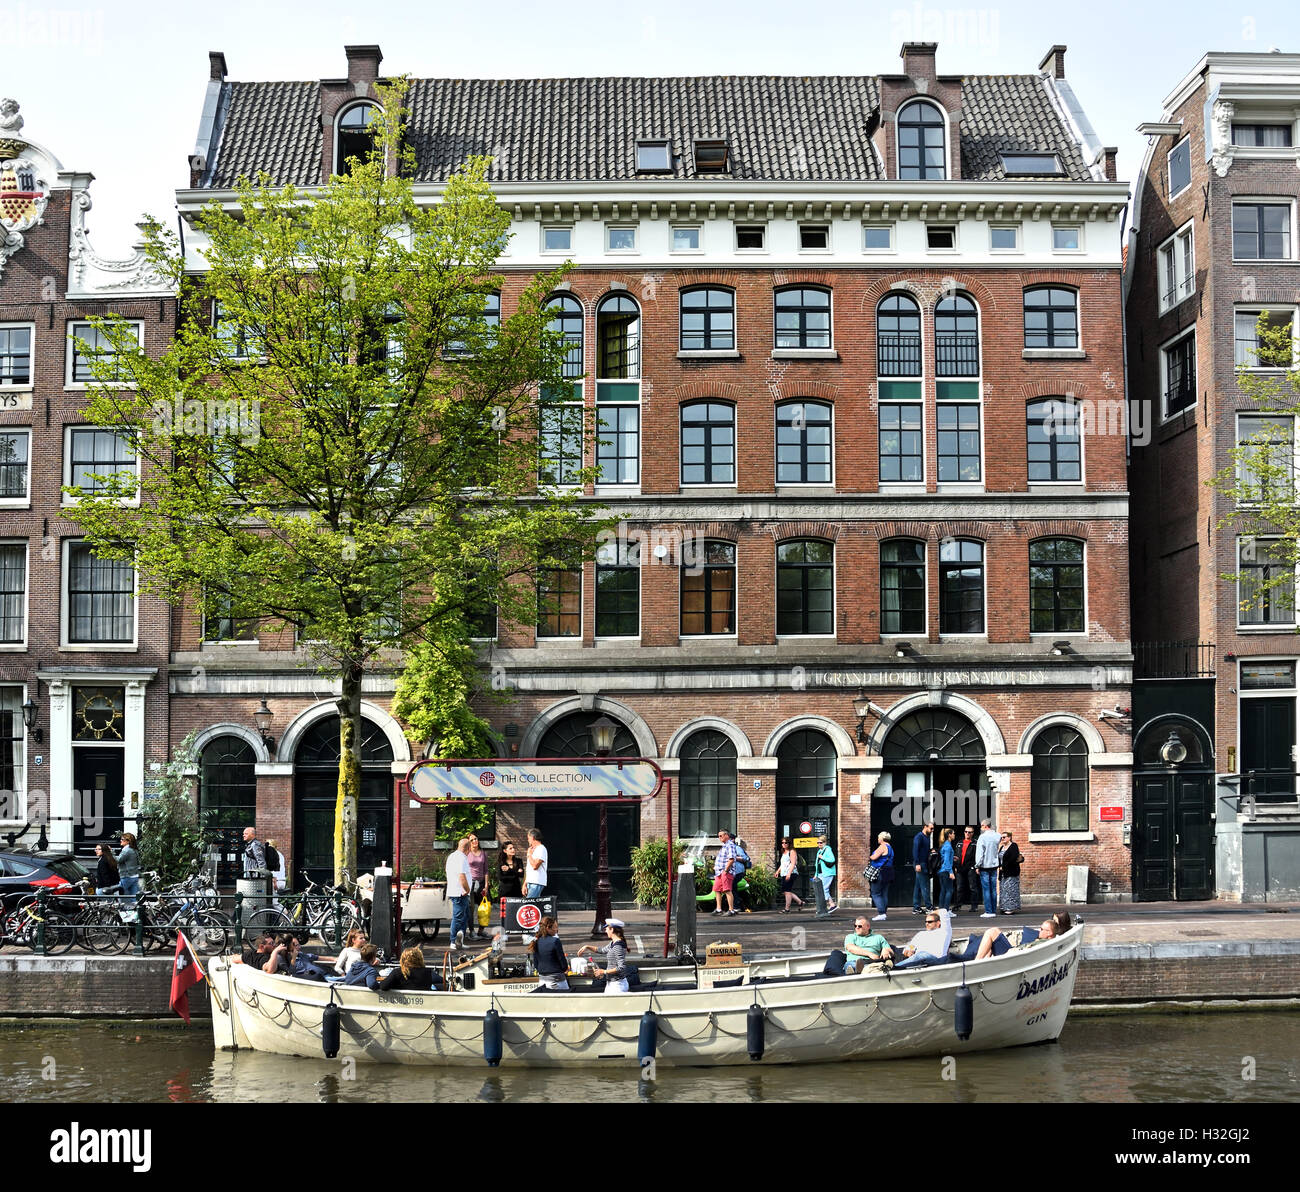 Kanal Kreuzfahrten von Freundschaft Amsterdam Niederlande (Oudezijds Voorburgwal - Red Light district de Wallen) Stockfoto